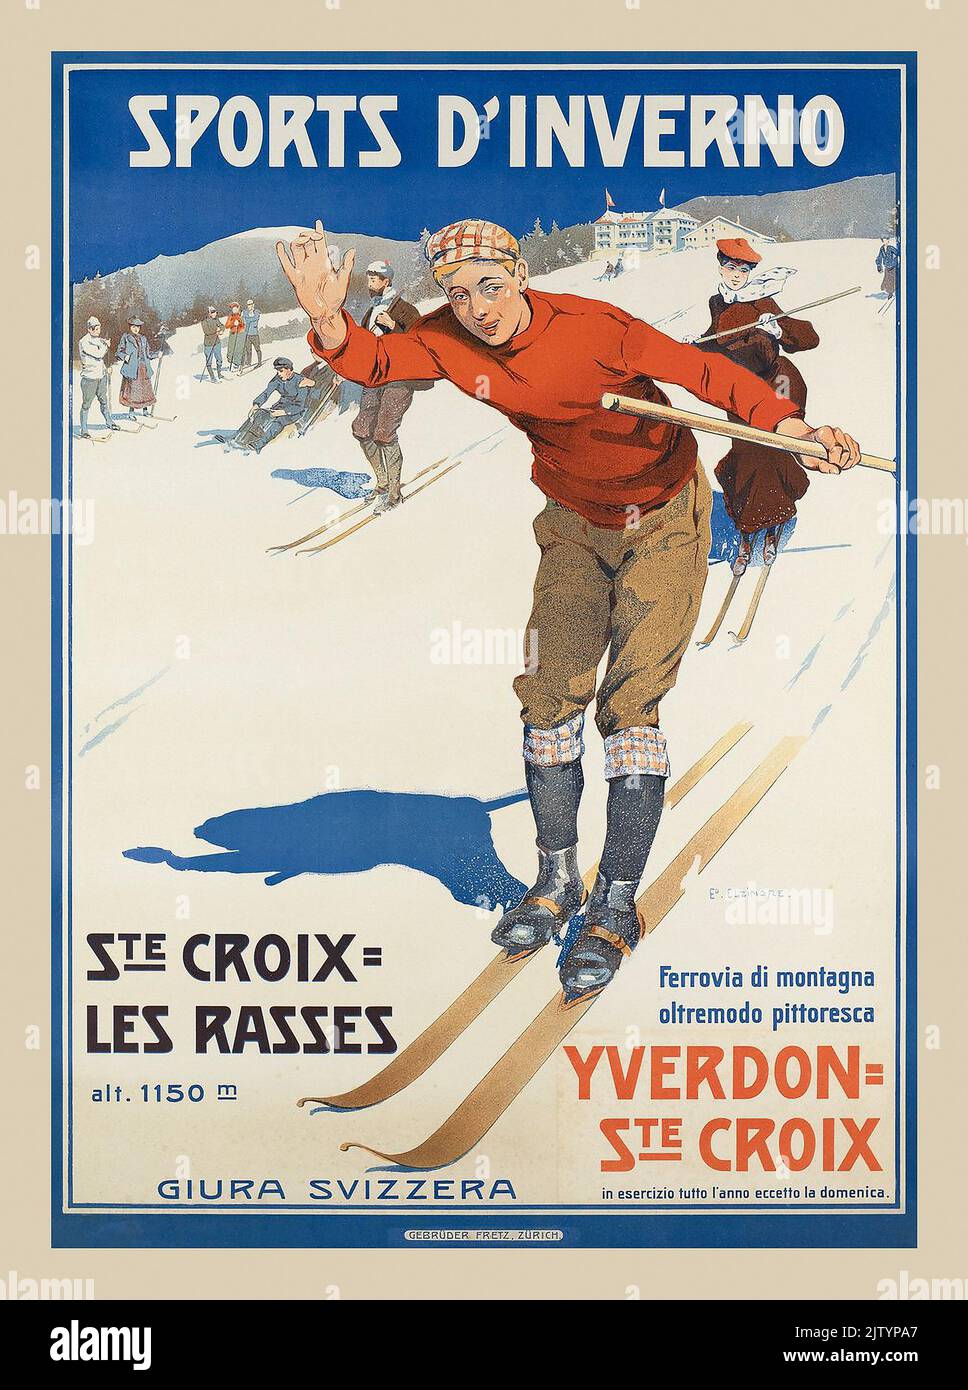 Vintage ski Poster 1900s Voyage Sport style mode Sports d'Inverno, Ste Croix les Rasses, Yverdon - Ste Croix par Edouard Elzingre 1905 Banque D'Images